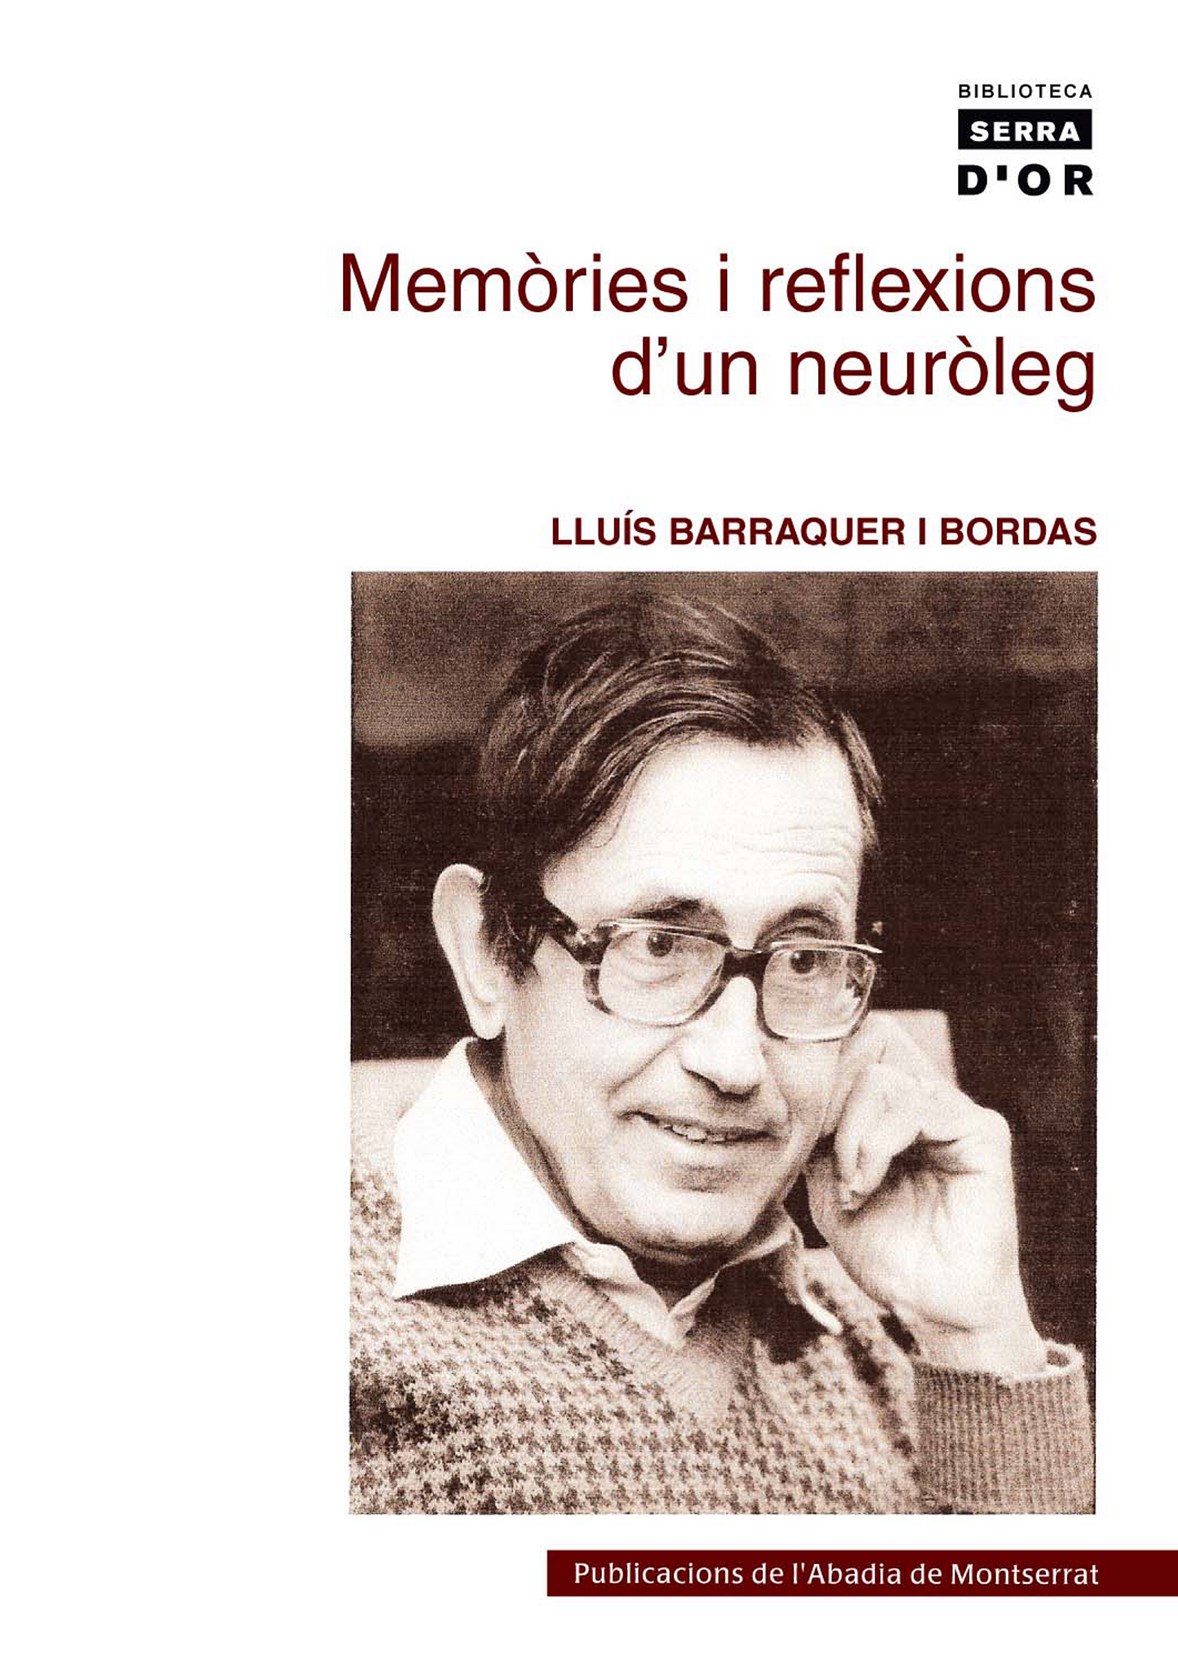 Lluís Barraquer i Bordas